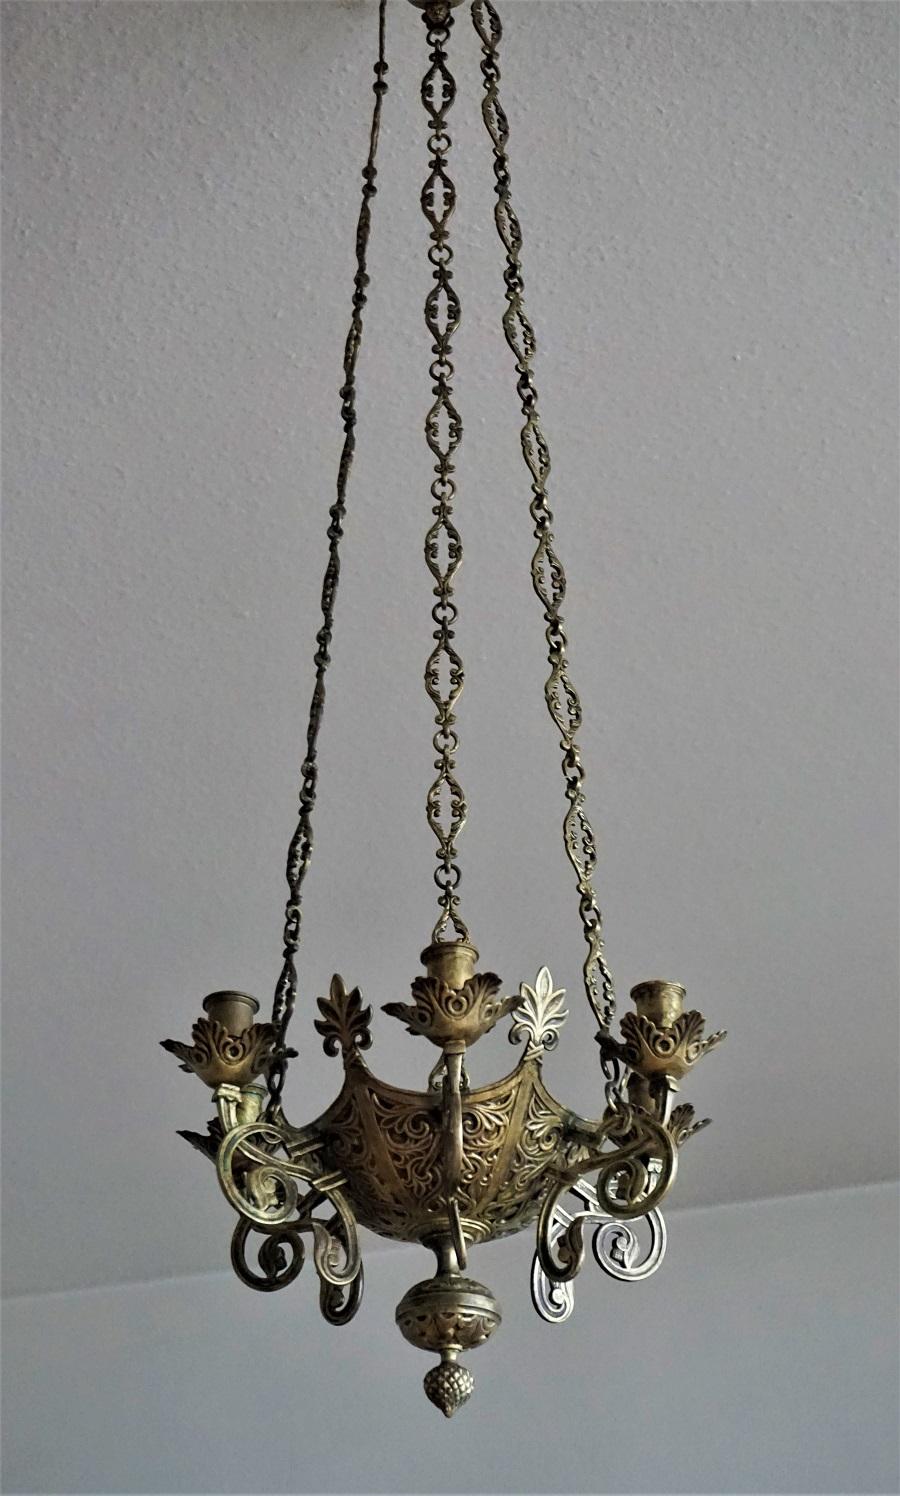 Lustre d'église en bronze et laiton de style néo-gothique / lampe de sanctuaire suspendue, Espagne, milieu du XVIIIe siècle, provenant probablement d'une famille possédant une chapelle privée. Corps en forme de couronne entouré de six chandeliers.